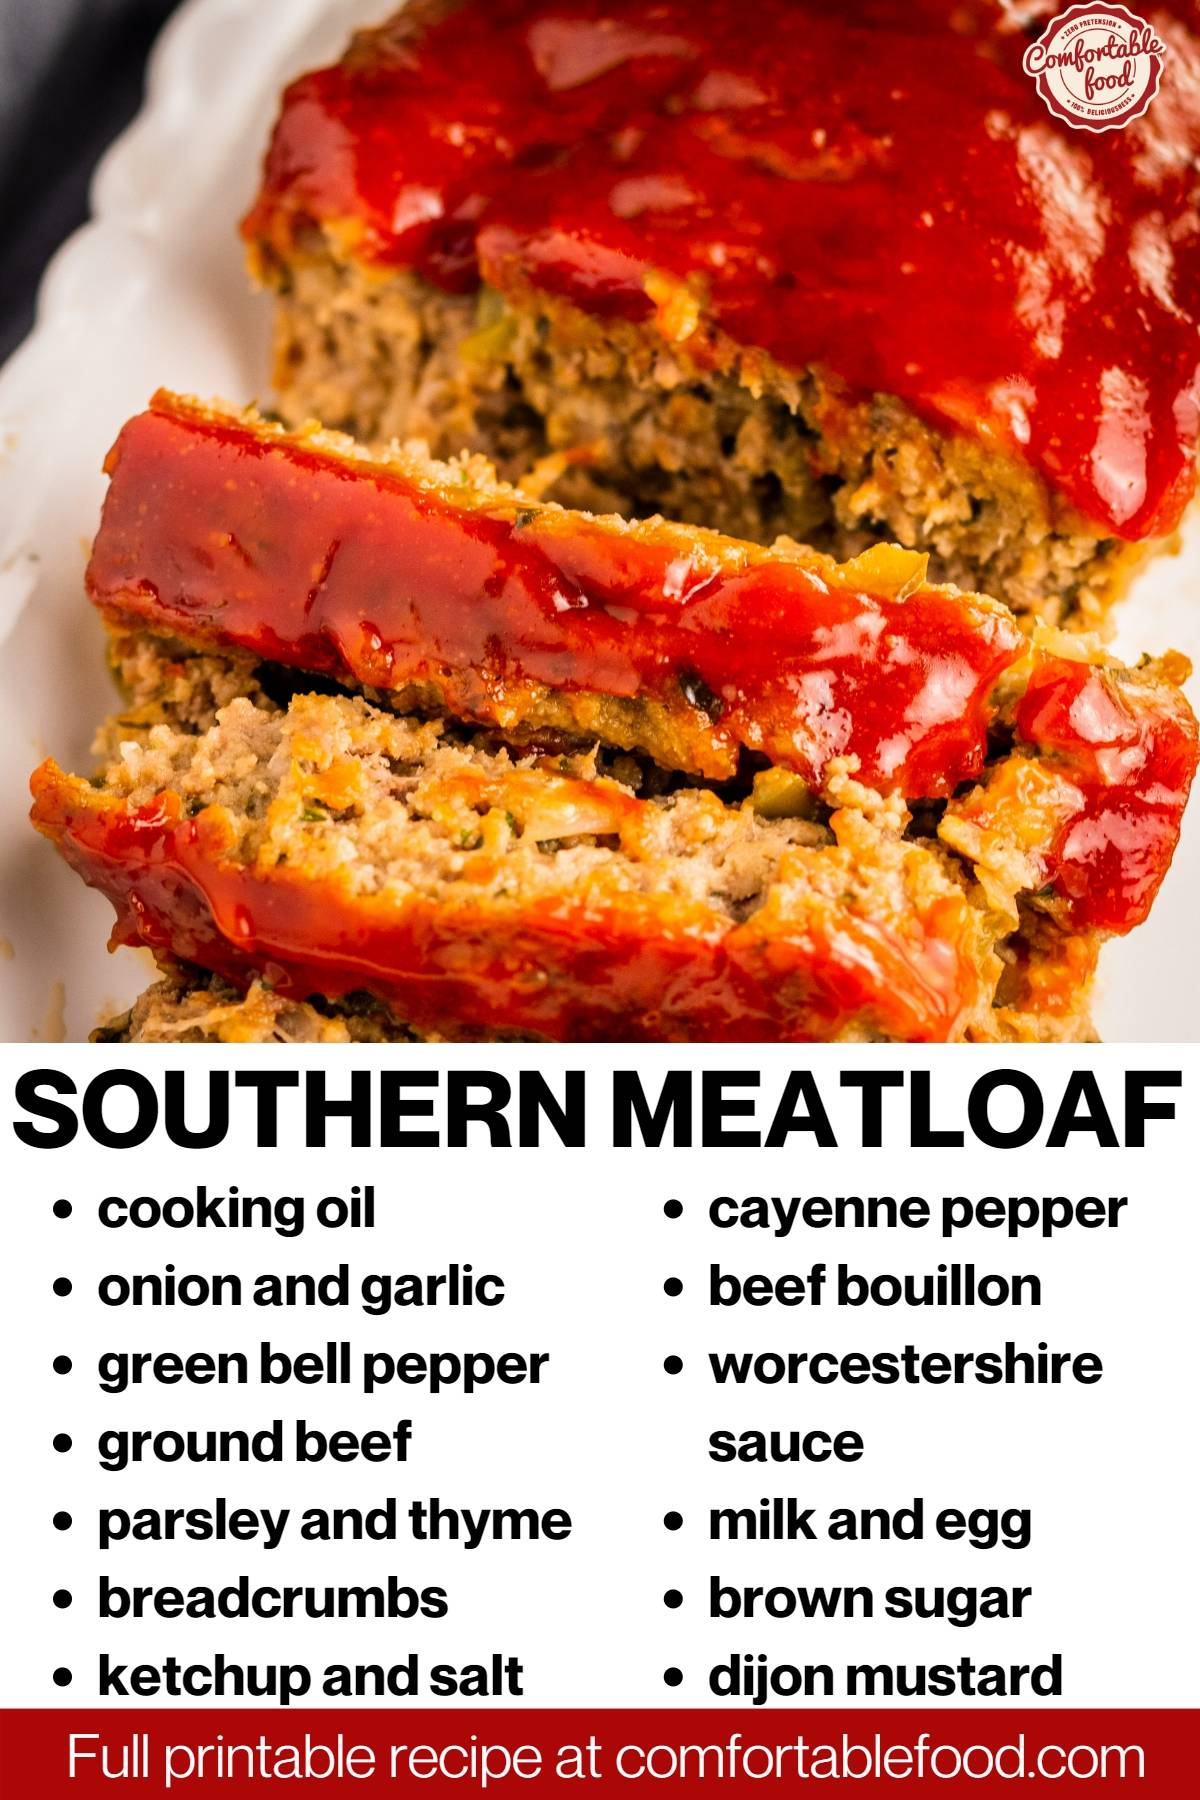 Southern meatloaf socials